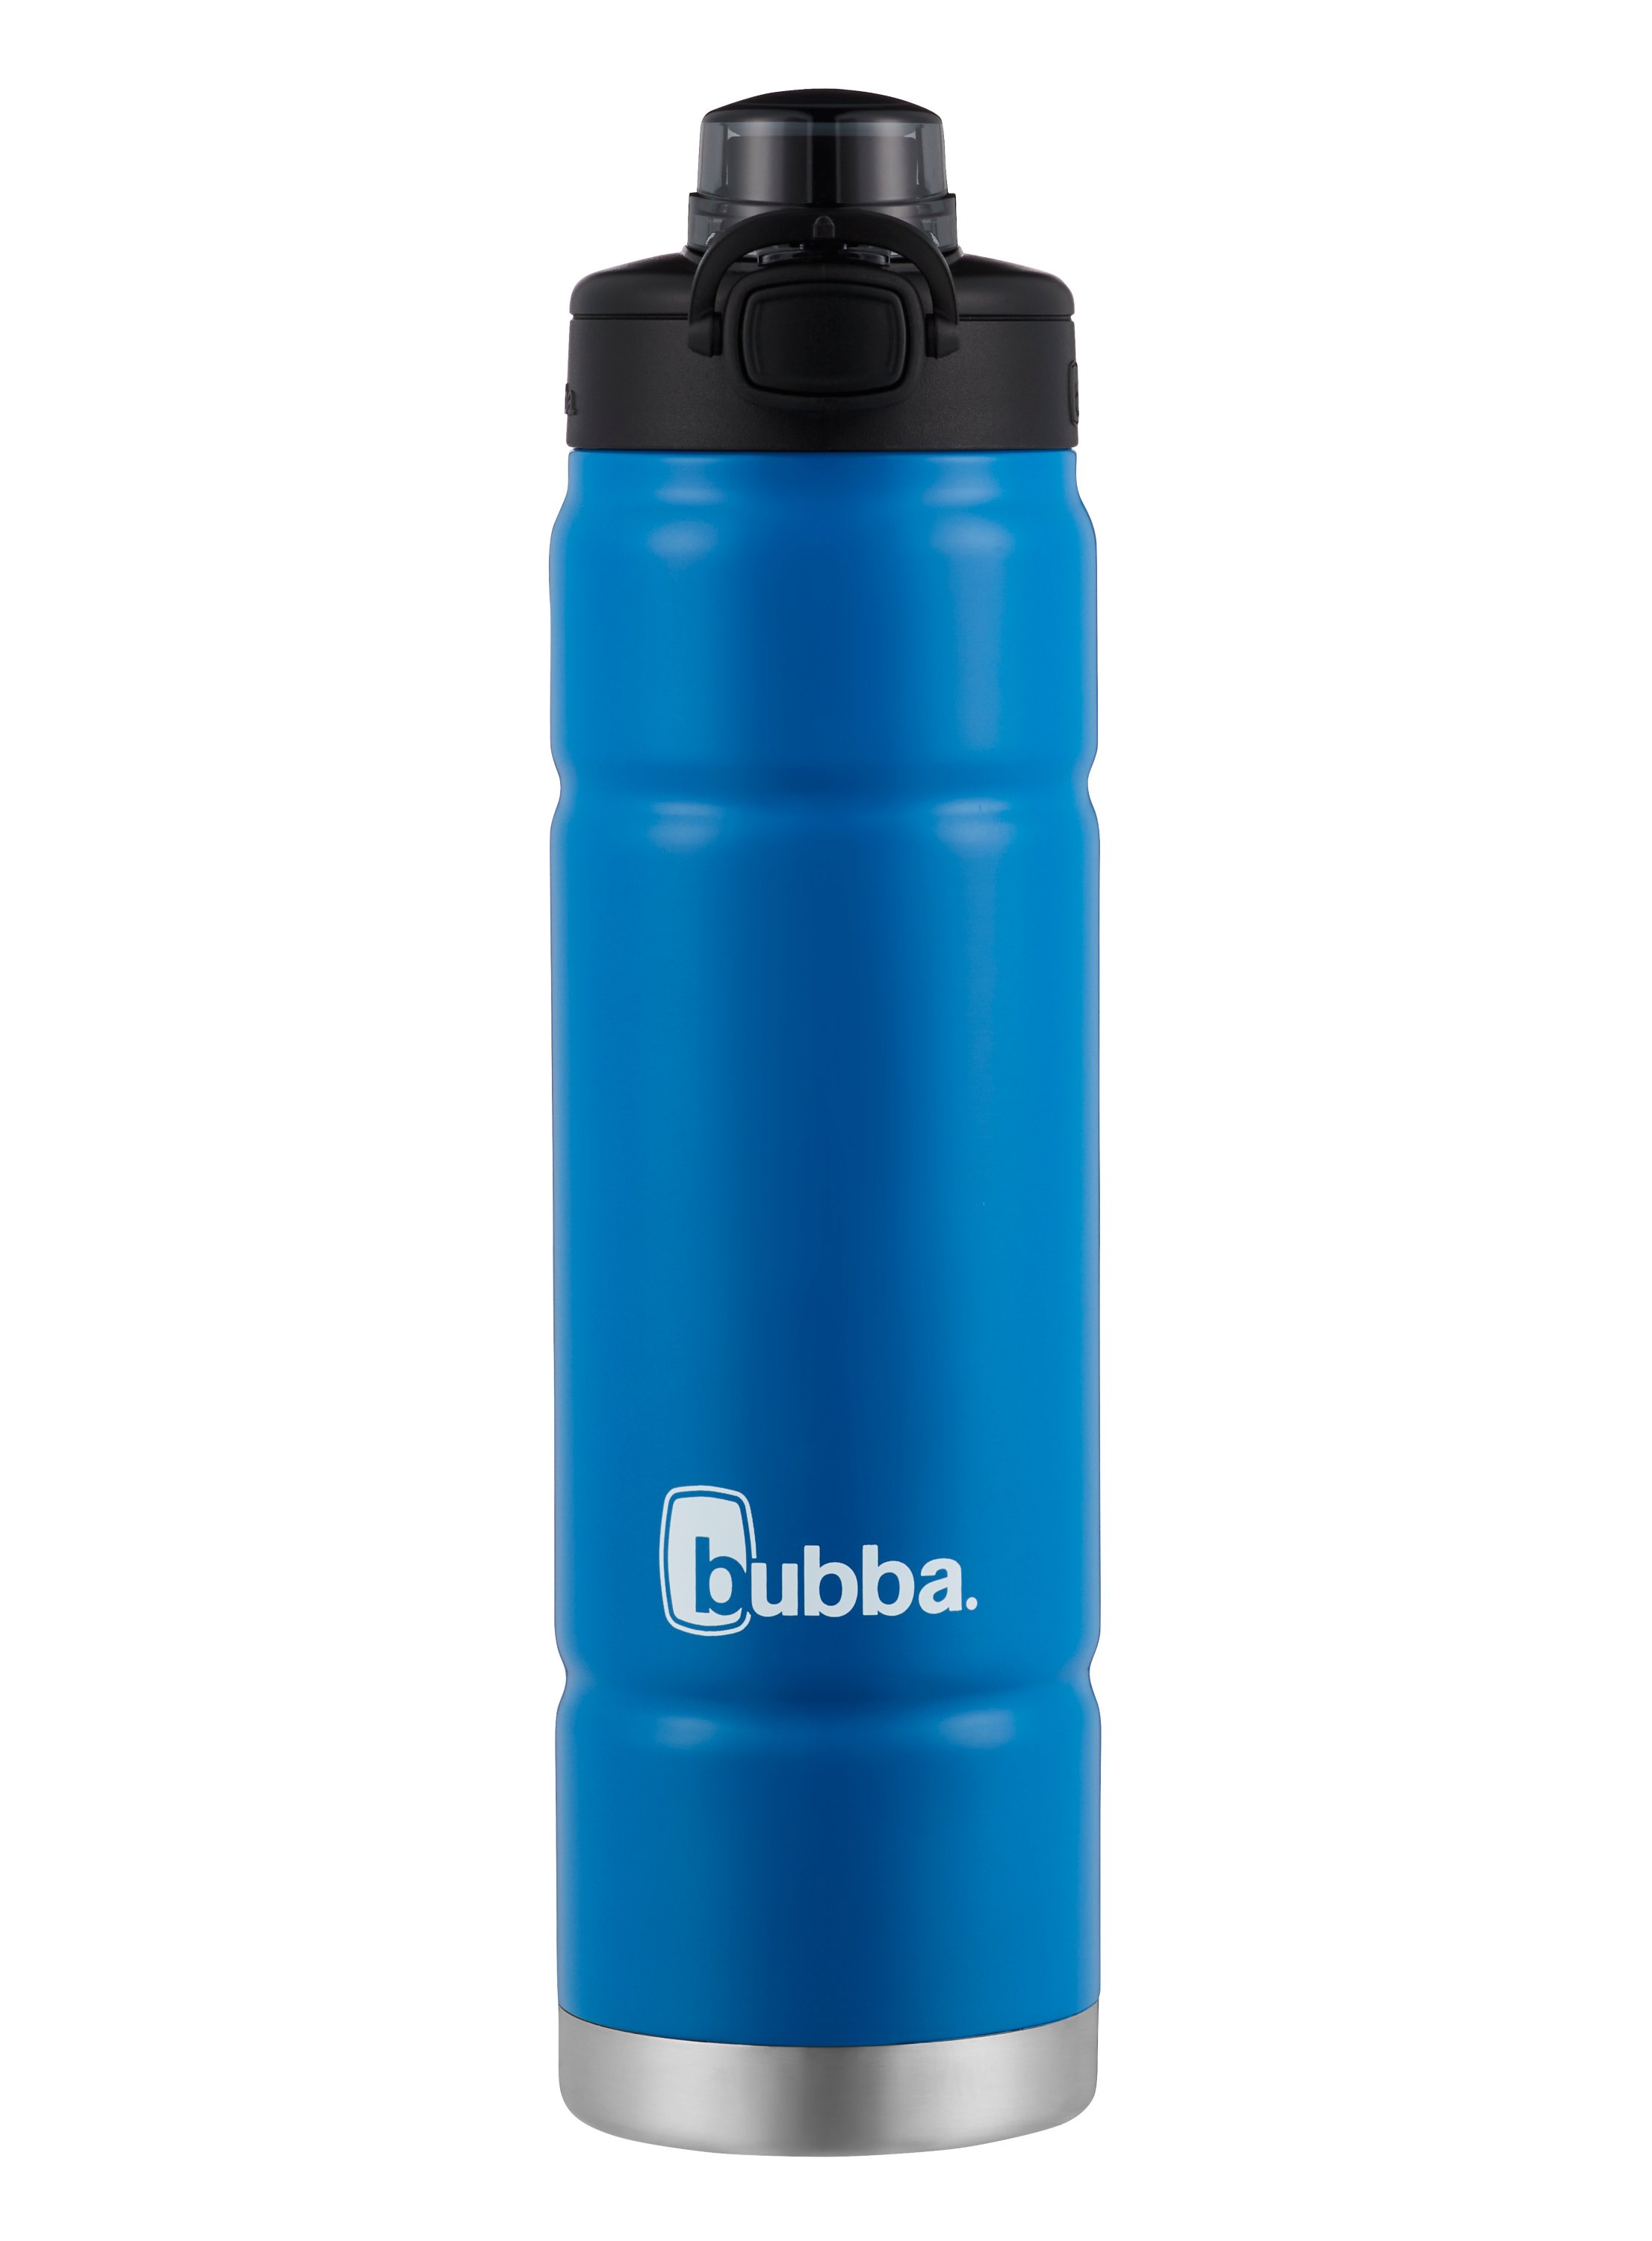 Bubba Trailblazer - All Products